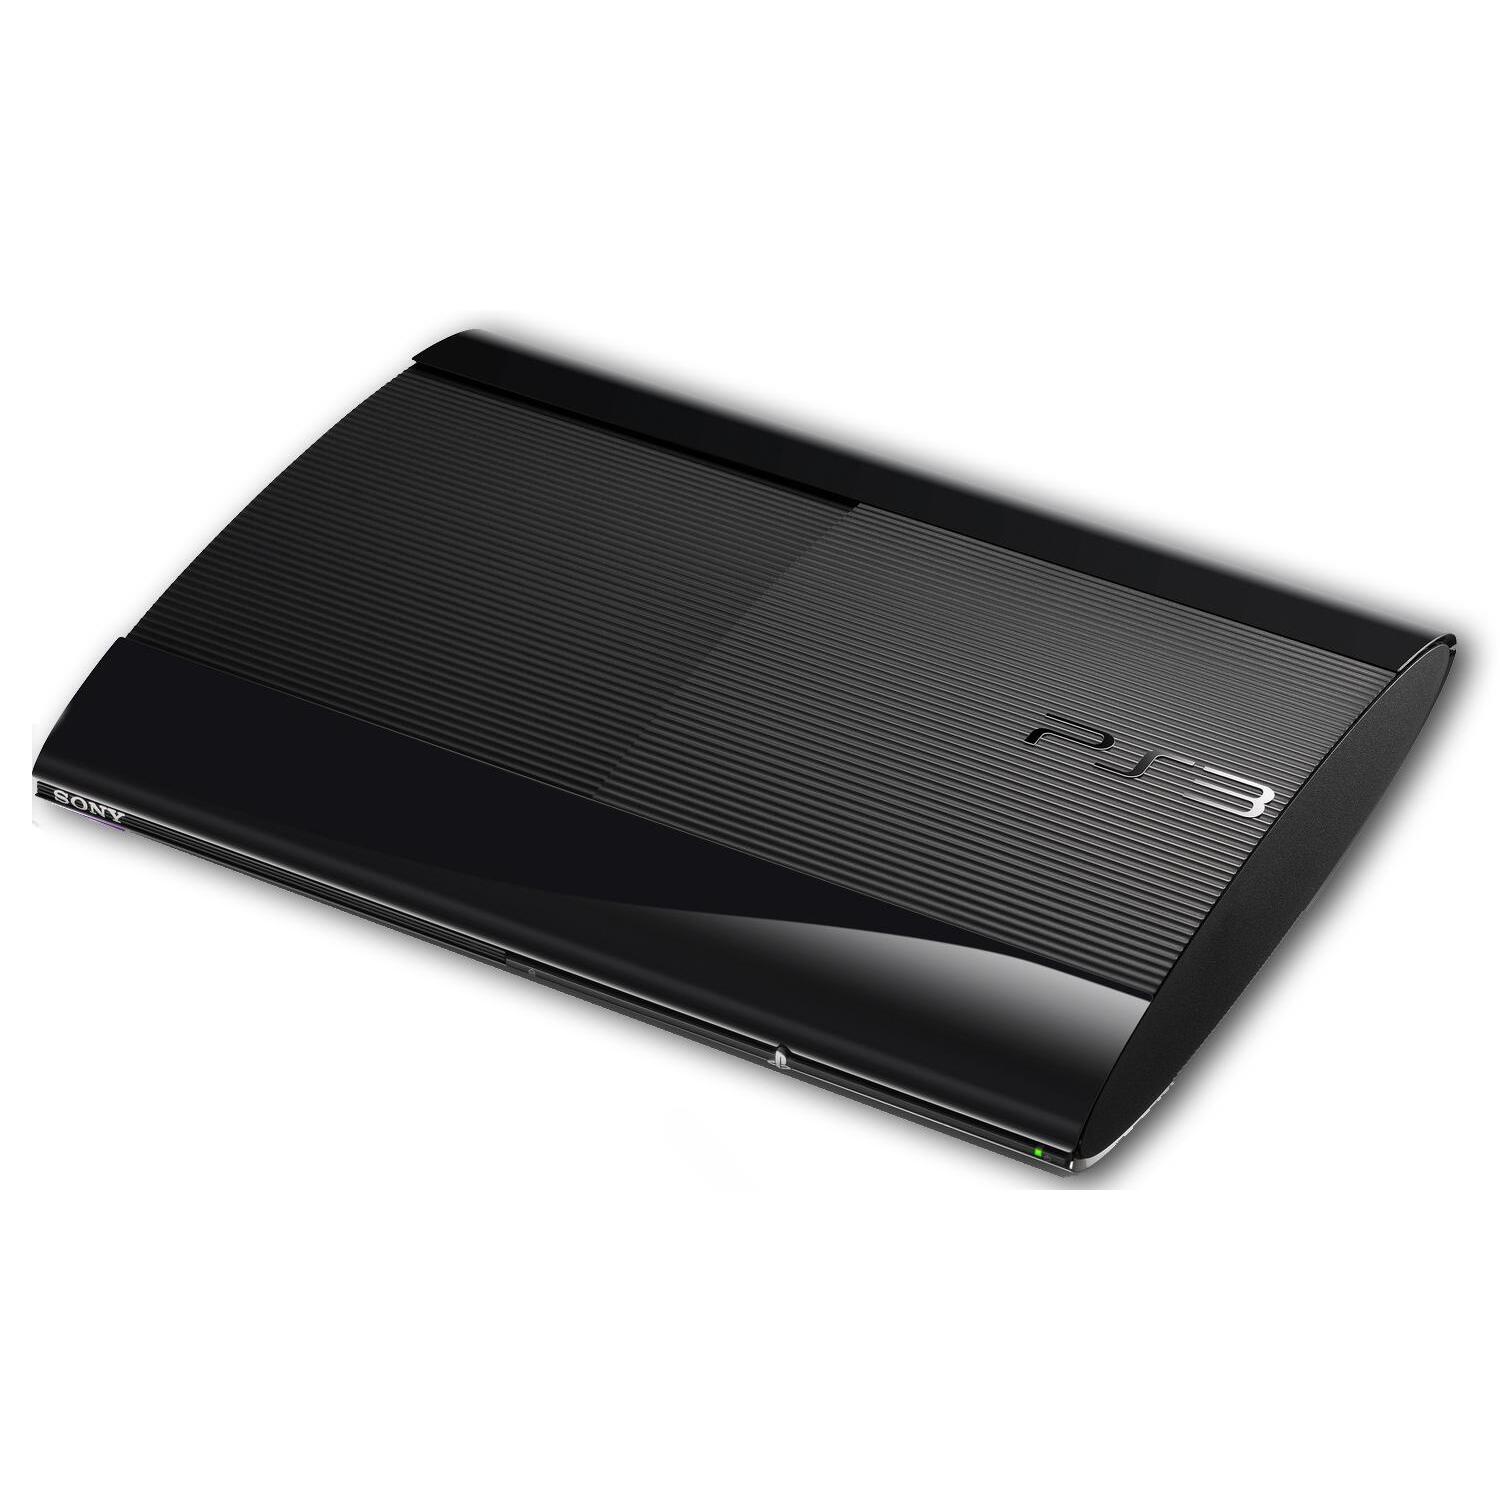 PS3 Console: Super Slim model) (PS3) kopen - €78